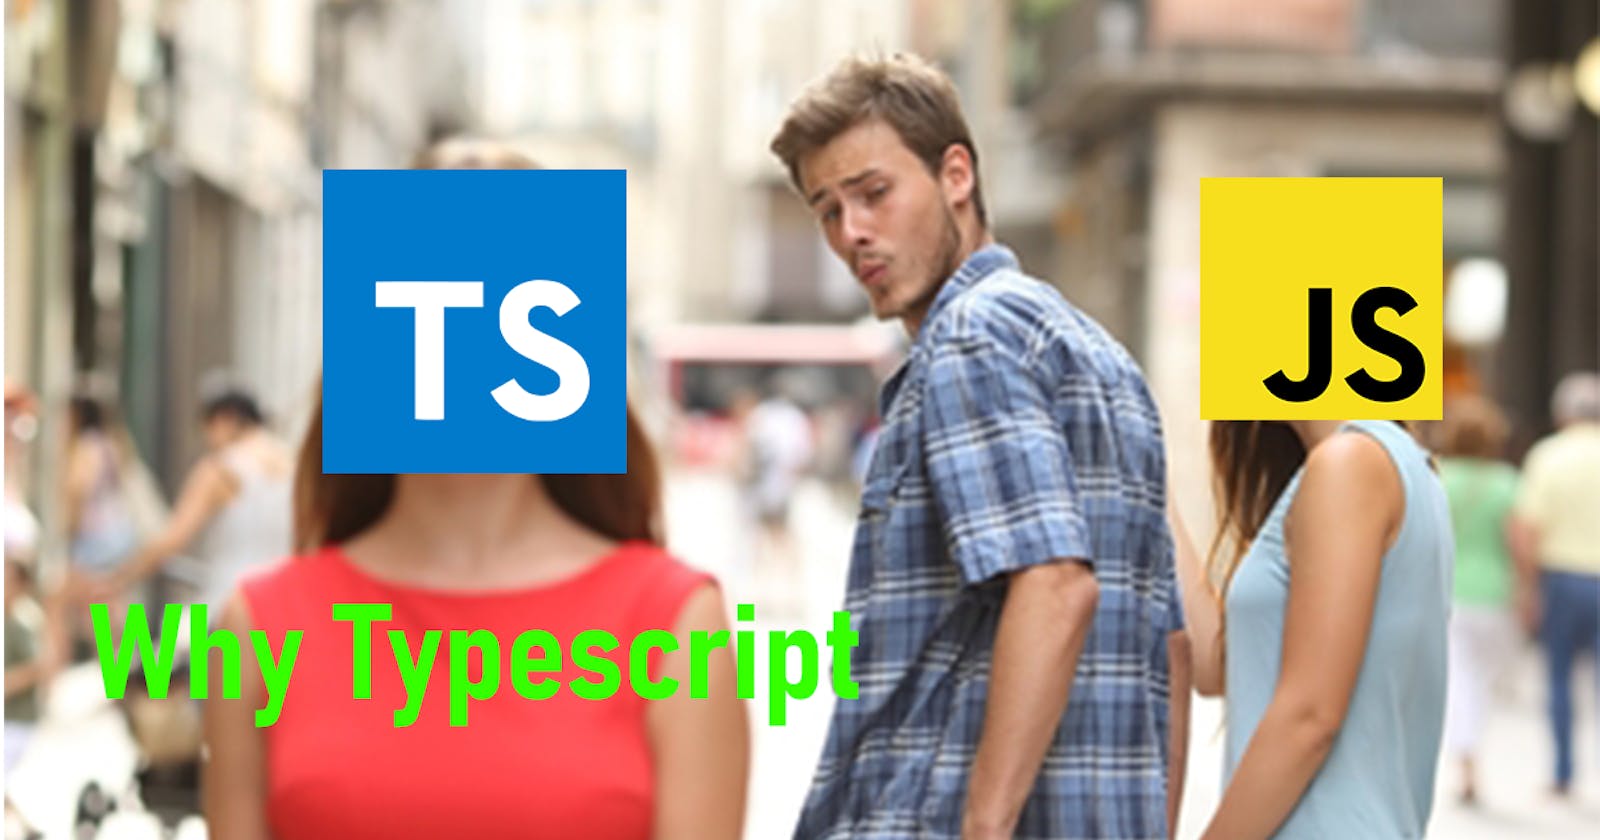 Typescript! My second love